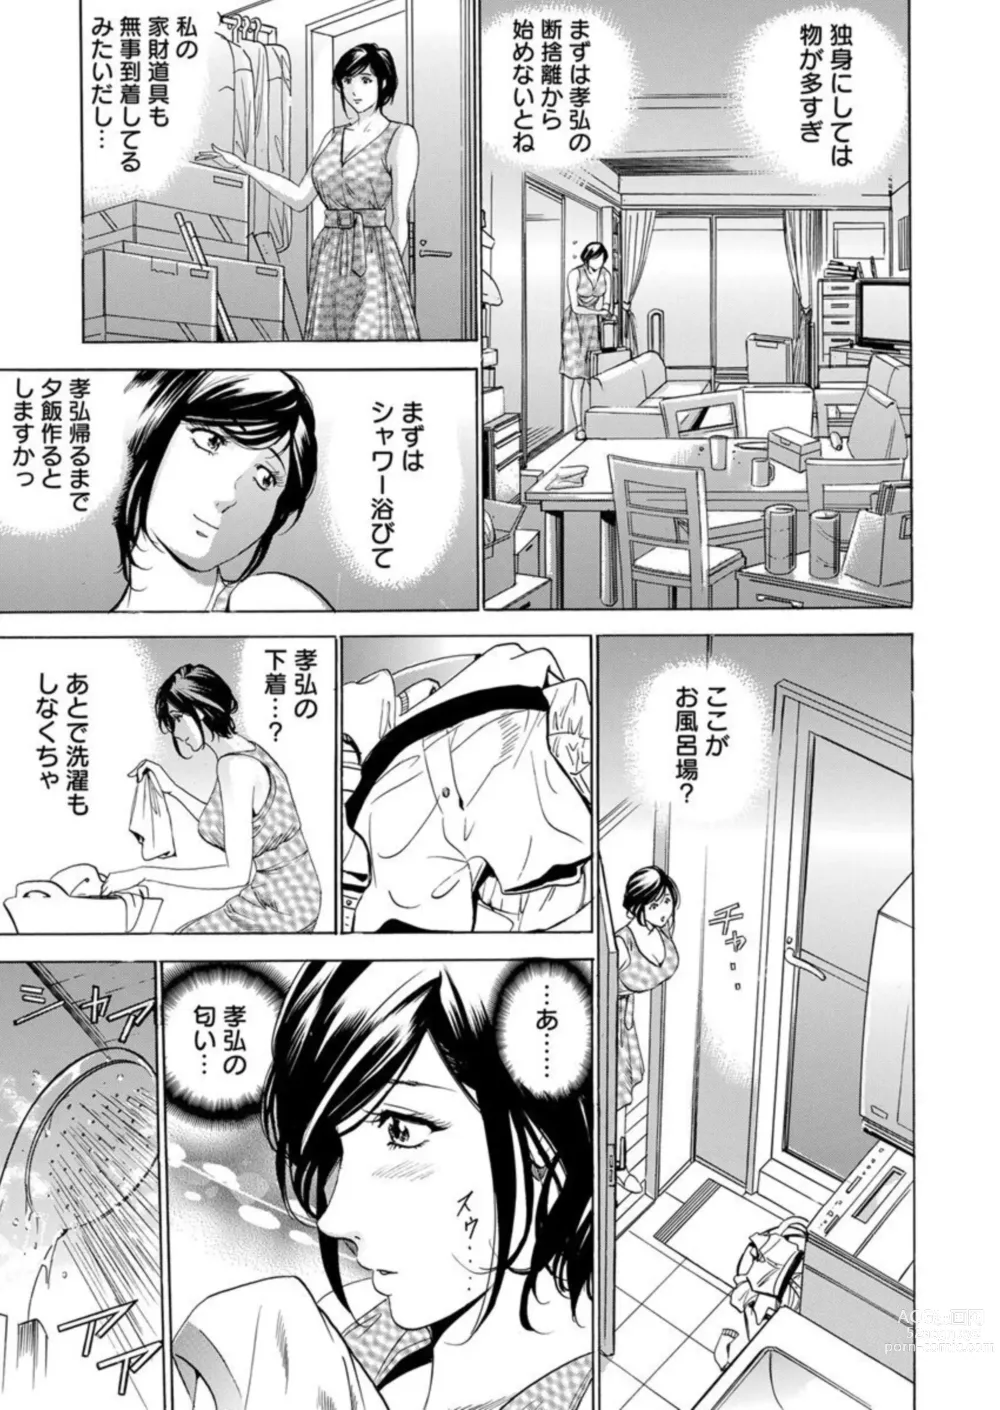 Page 5 of manga Totsugisaki wa Tsureko ga 9 nin!? Gibo, Musukotachi to no sei Kankei ni Nayamu 1